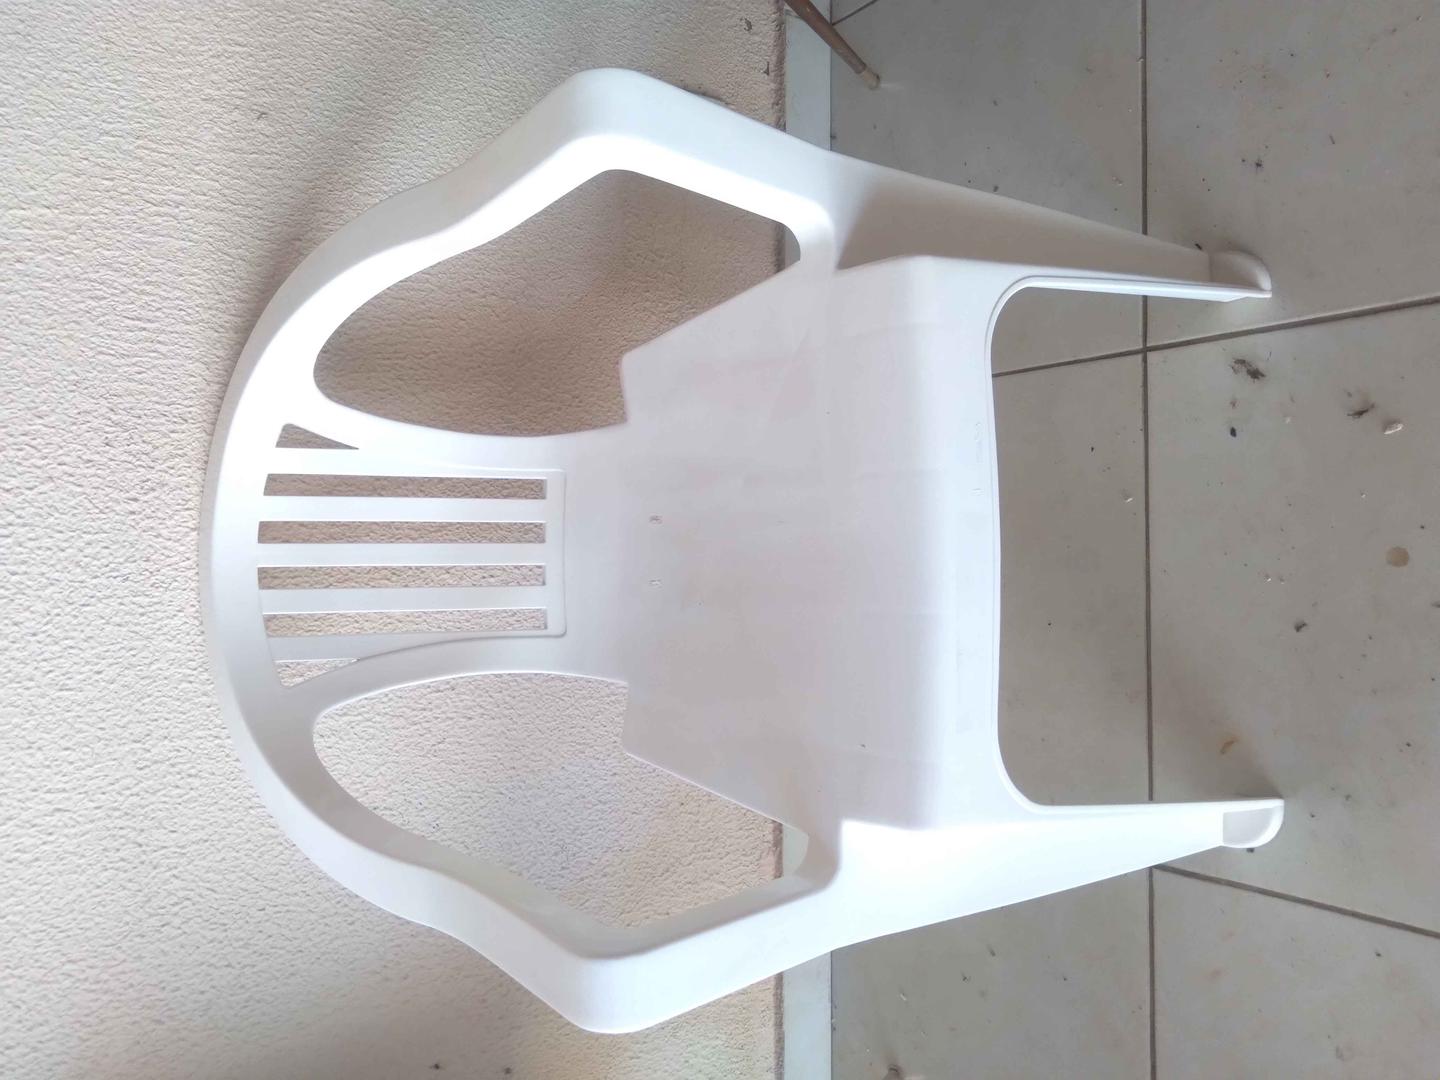 Cadeira c/ Braços em Plástico Branco 71 cm x 55 cm x 45 cm